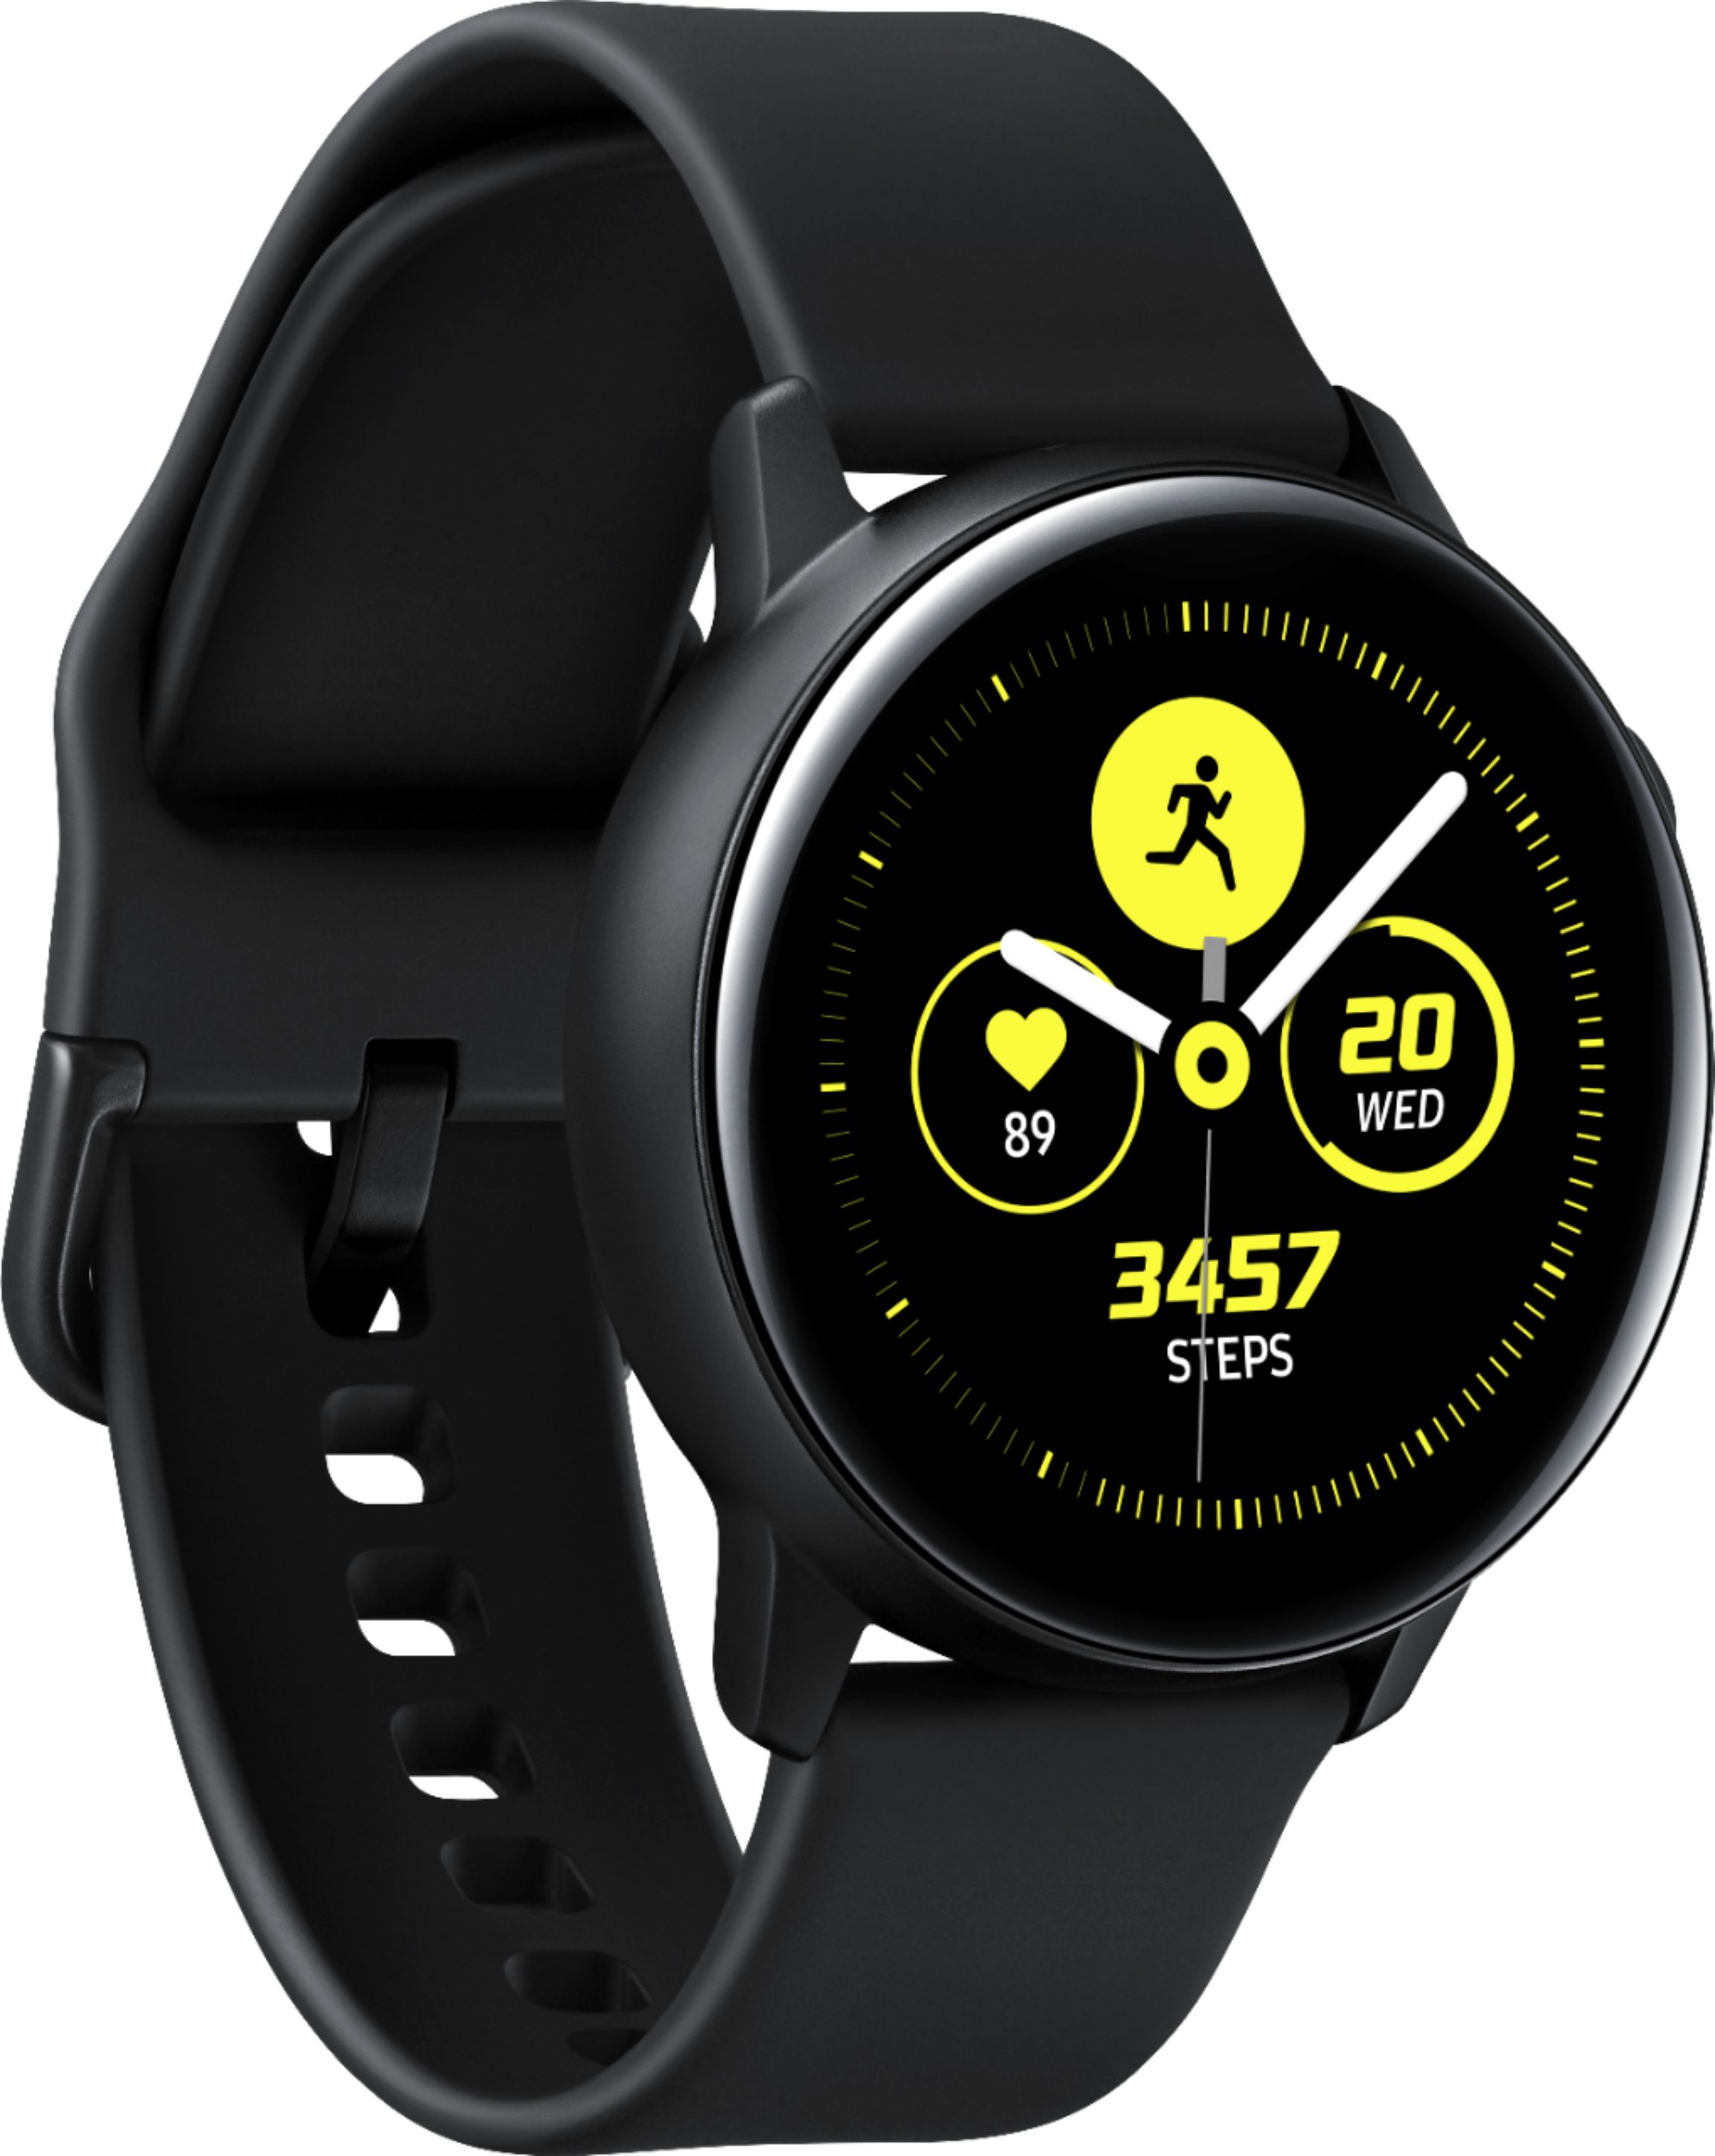 Best Buy: Samsung Galaxy Watch Active Smartwatch Aluminum Black SM-R500NZKAXAR